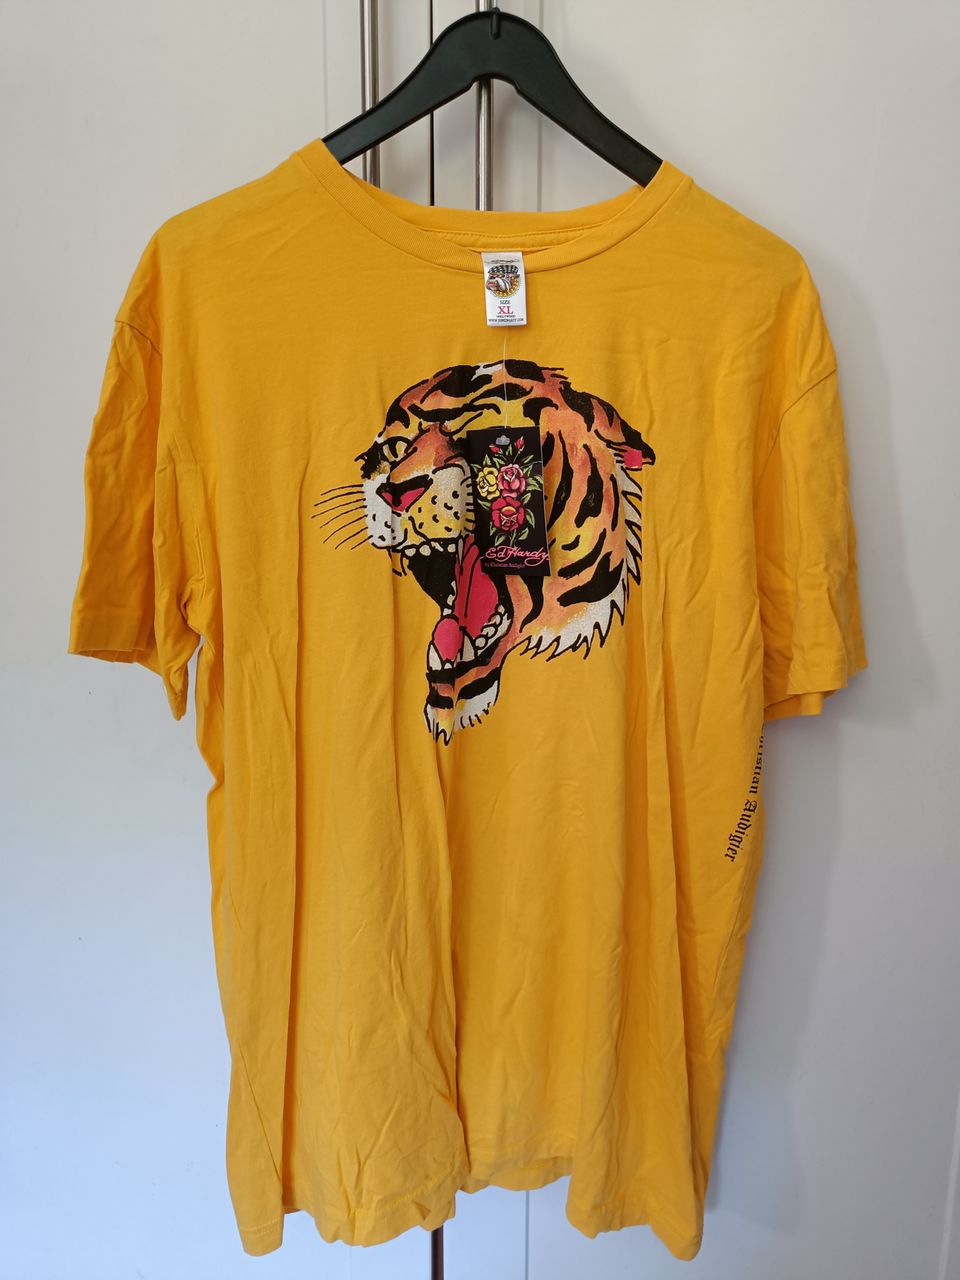 Ed Hardy keltainen Roaring Tiger t-paita, koko XL, uusi